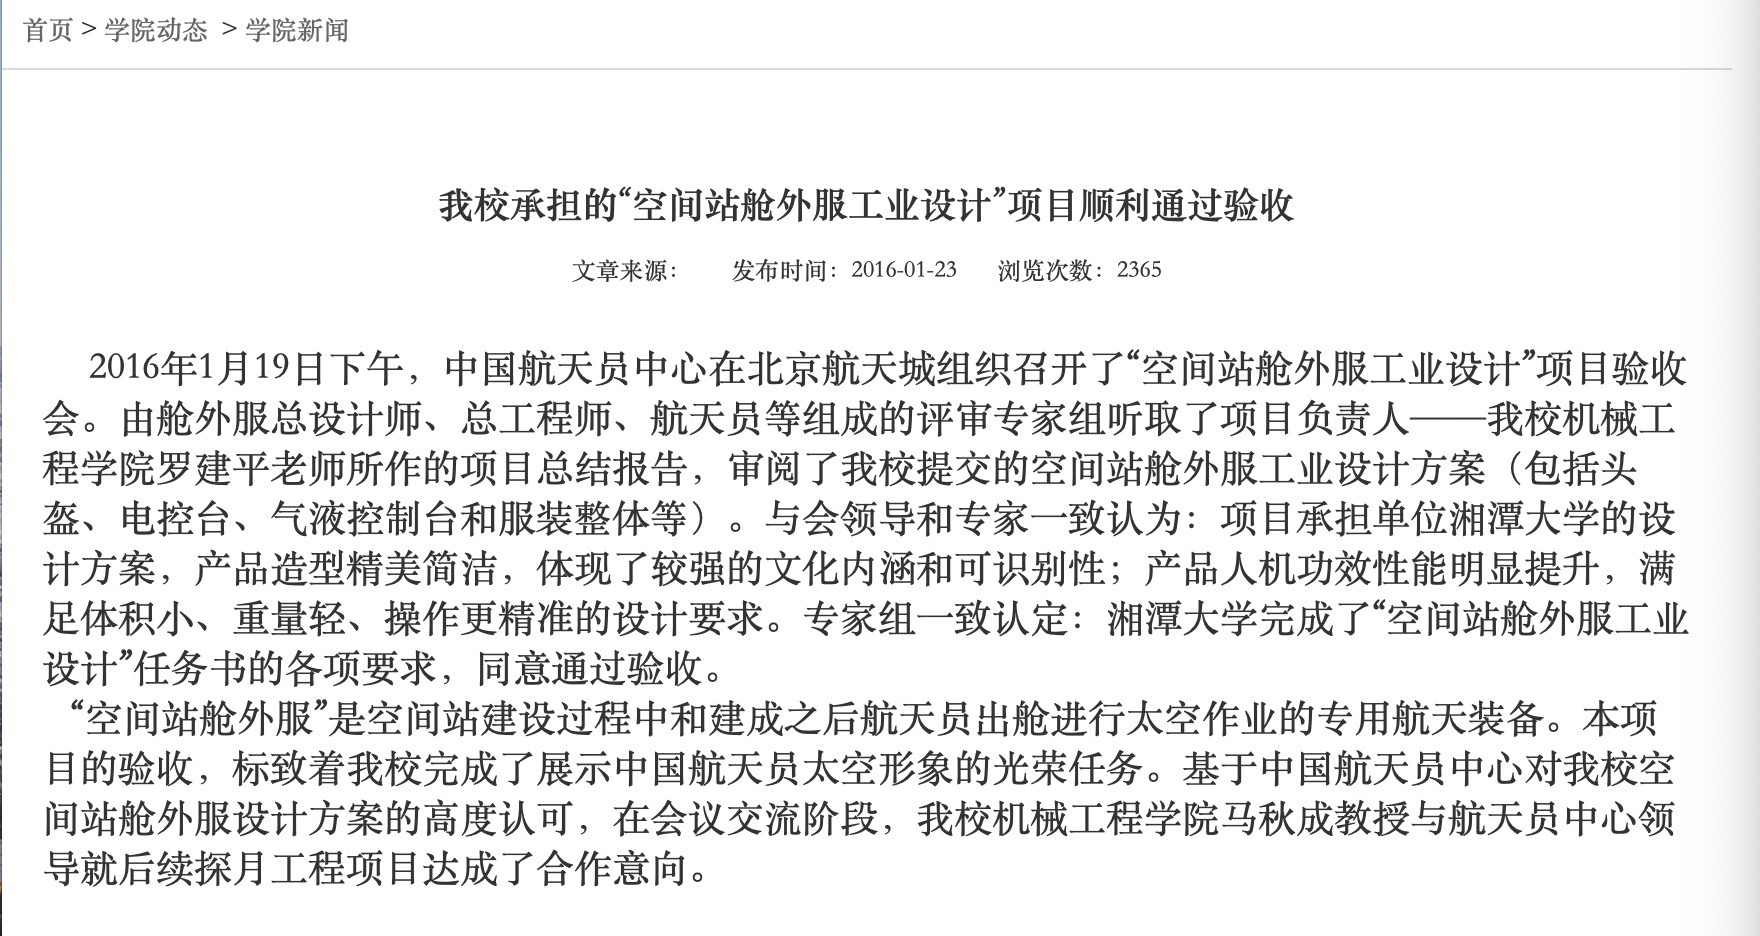 湘潭大学官网的舱外服项目验收报道 图片来源：湘潭大学官网 